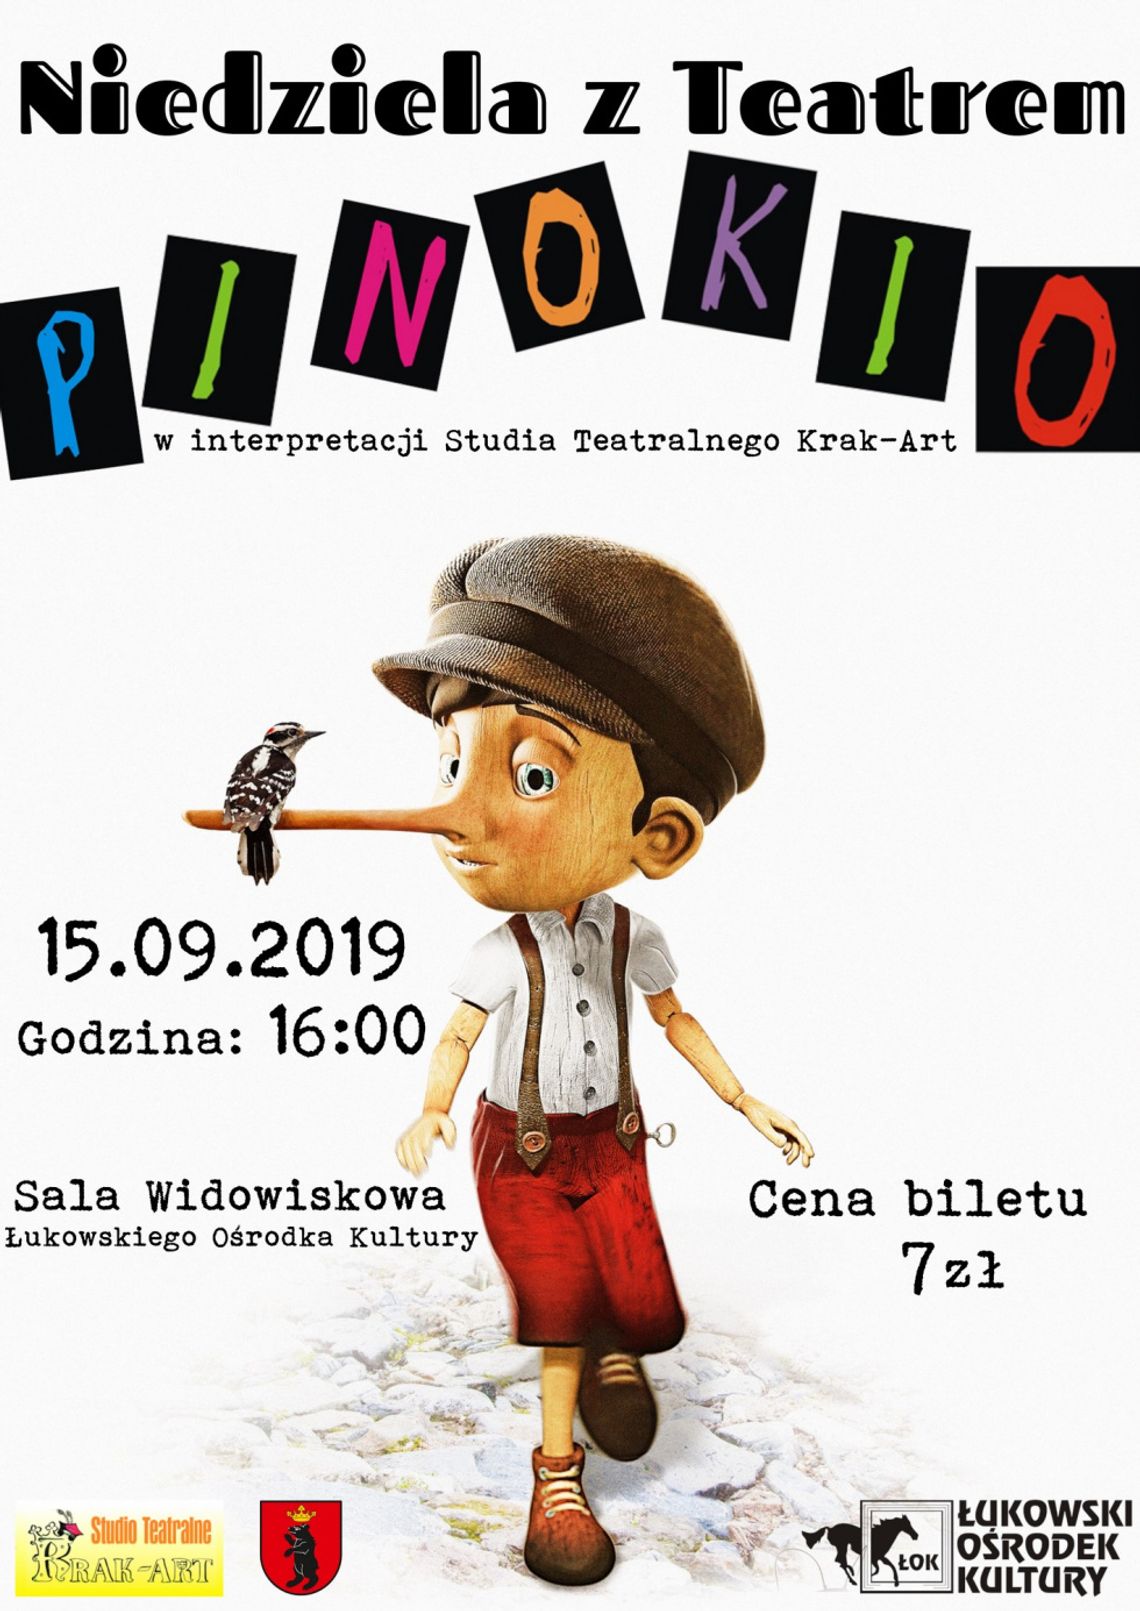 Niedziela z Teatrem "Pinokio"